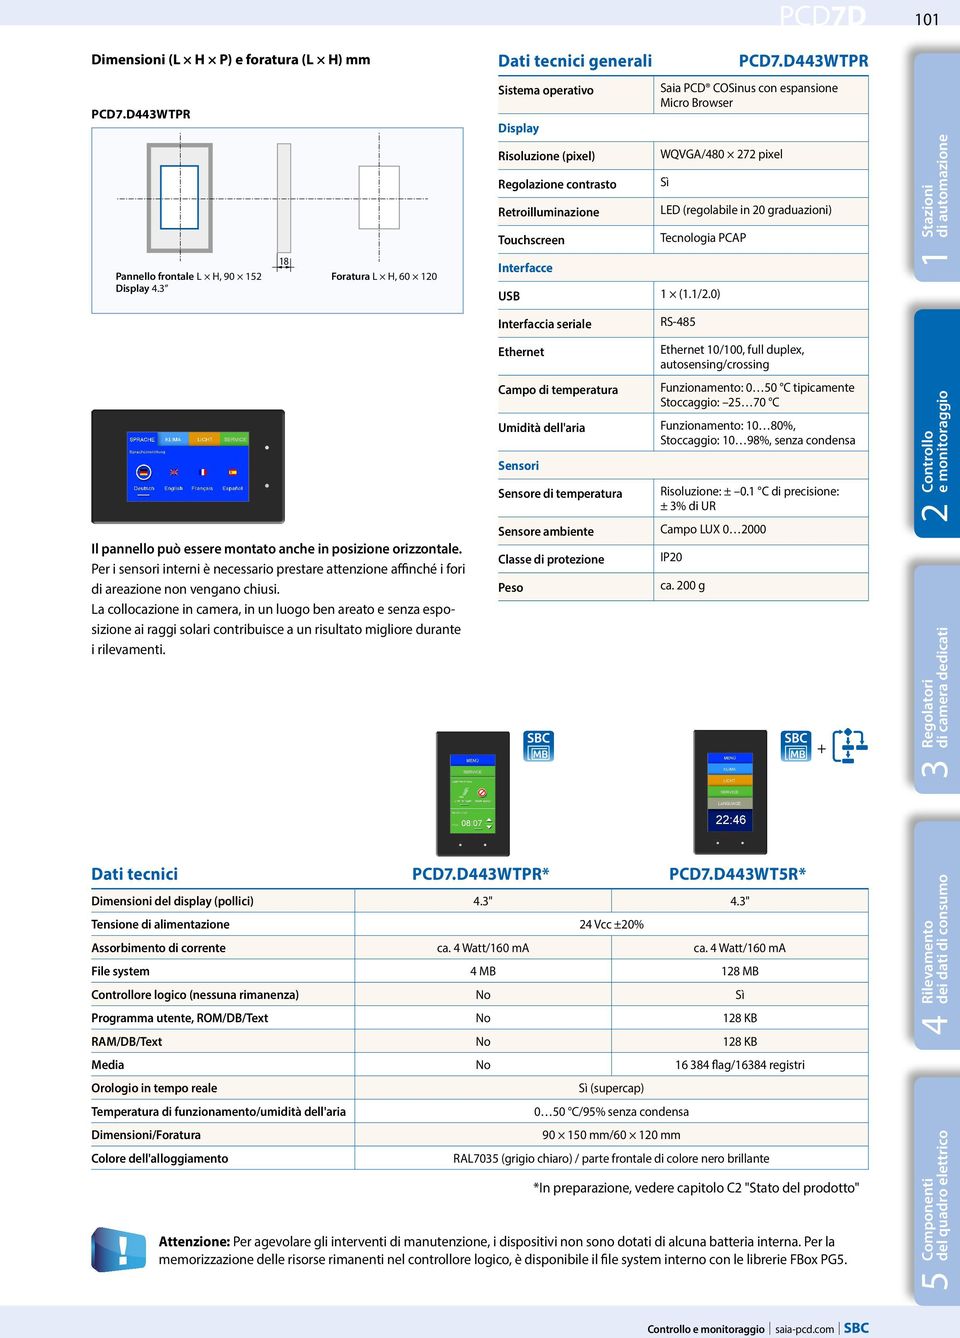 D443WTPR Saia PCD COSinus con espansione Micro Browser WQVGA/480 272 pixel Sì LED (regolabile in 20 graduazioni) Tecnologia PCAP USB 1 (1.1/2.